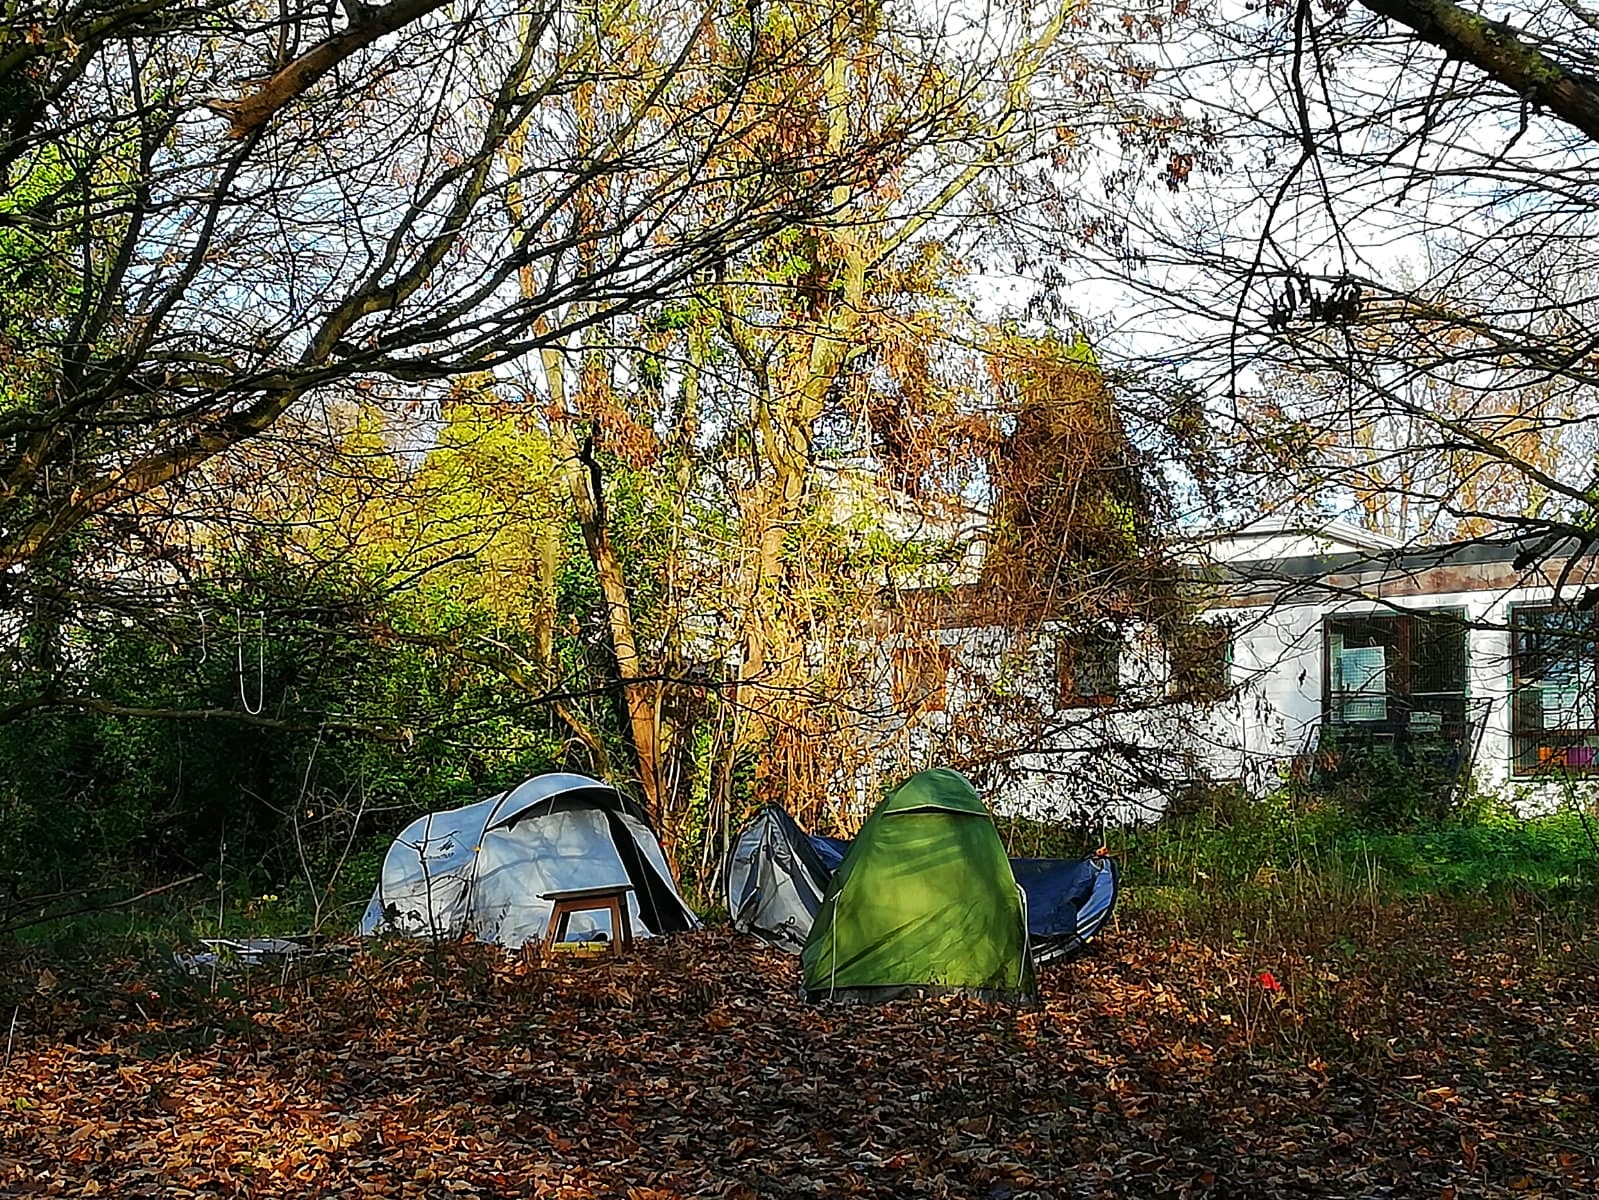 Des liégeois vivent sous tente dans des parcs. A quand un plan pour une ville zéro-SDF ?